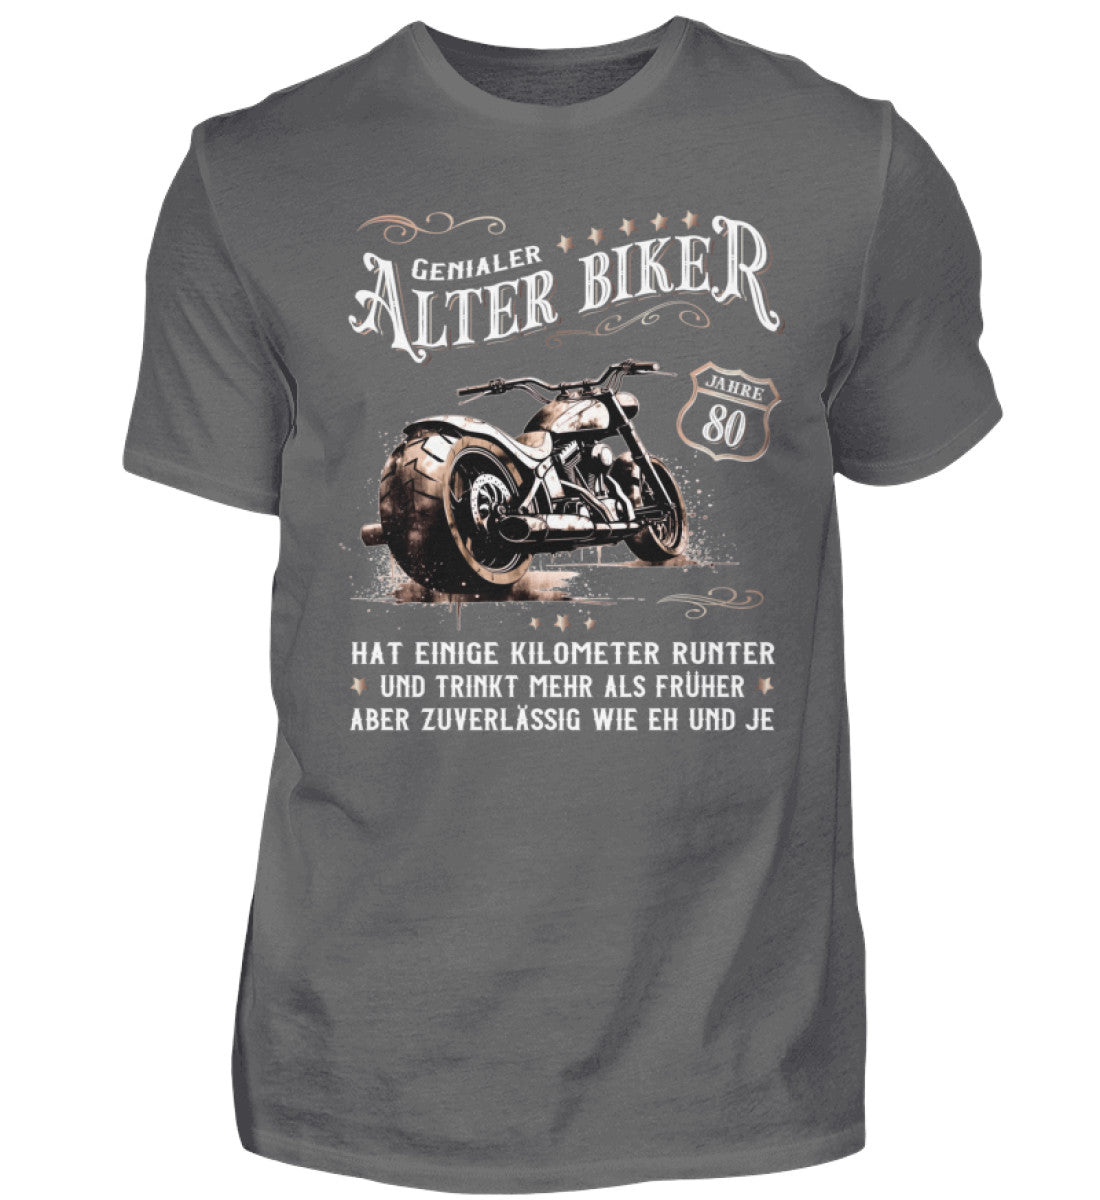 Ein Biker T-Shirt zum Geburtstag für Motorradfahrer von Wingbikers mit dem Aufdruck, Alter Biker - 80 Jahre - Einige Kilometer runter, trinkt mehr - aber zuverlässig wie eh und je - in grau.